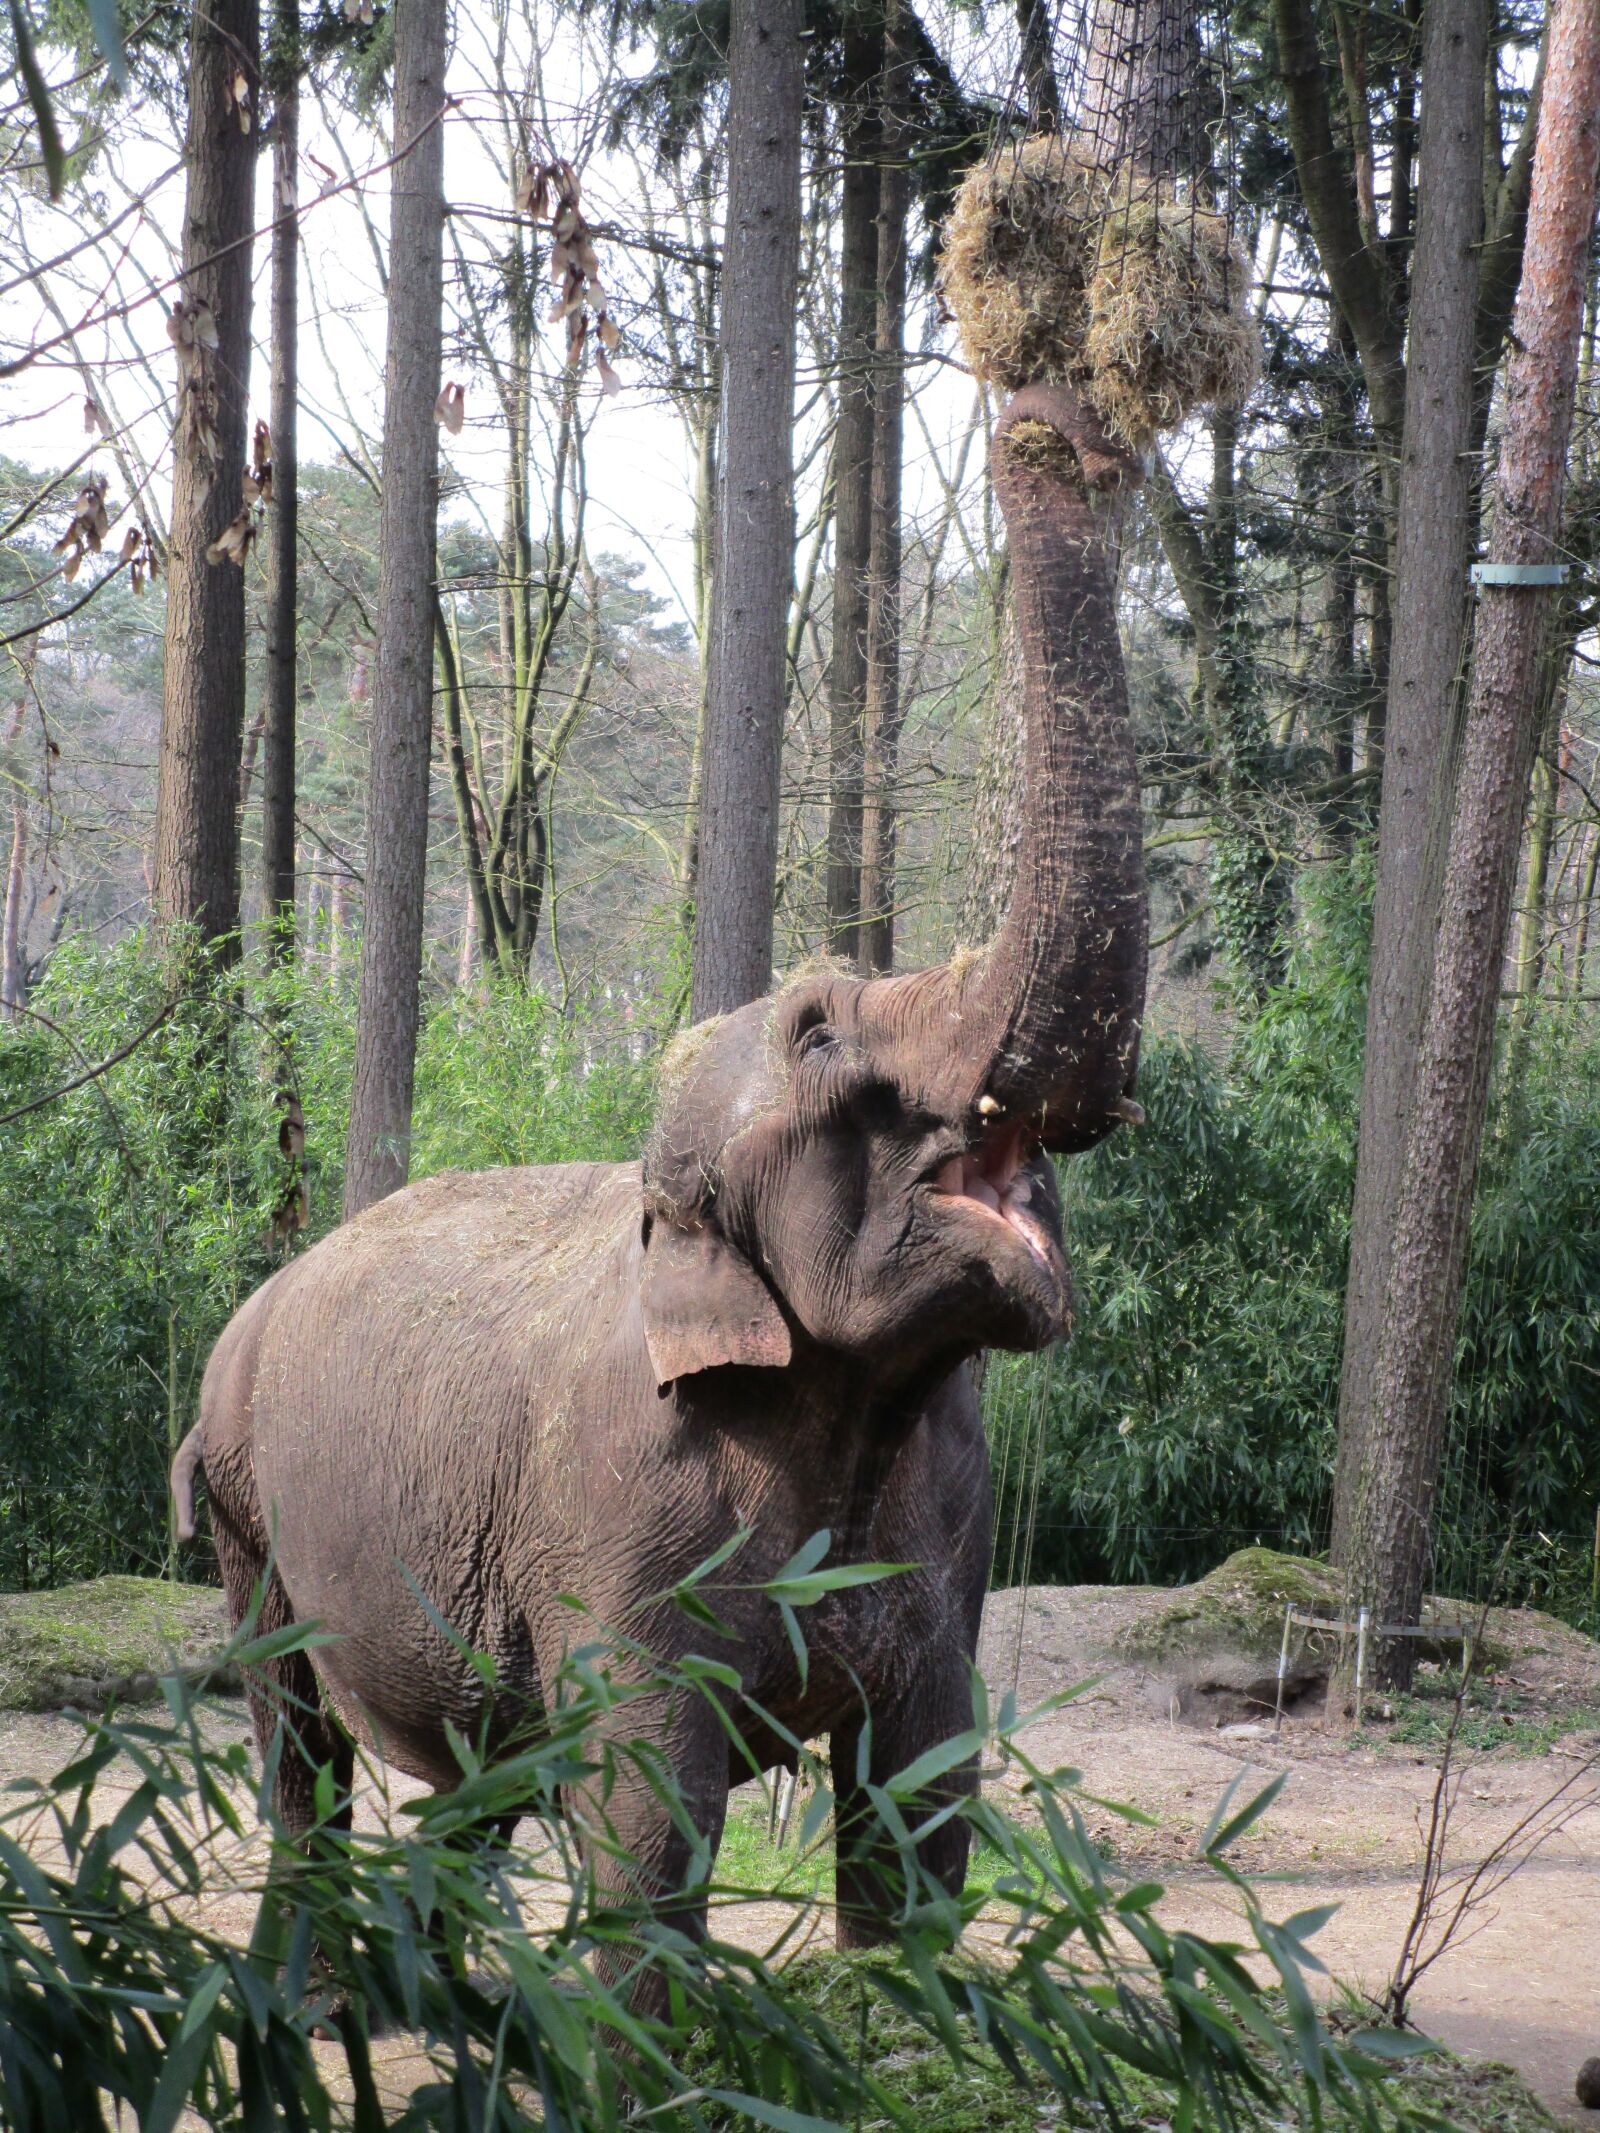 Canon PowerShot ELPH 150 IS (IXUS 155 / IXY 140) sample photo. Elephant, eats, zoo photography